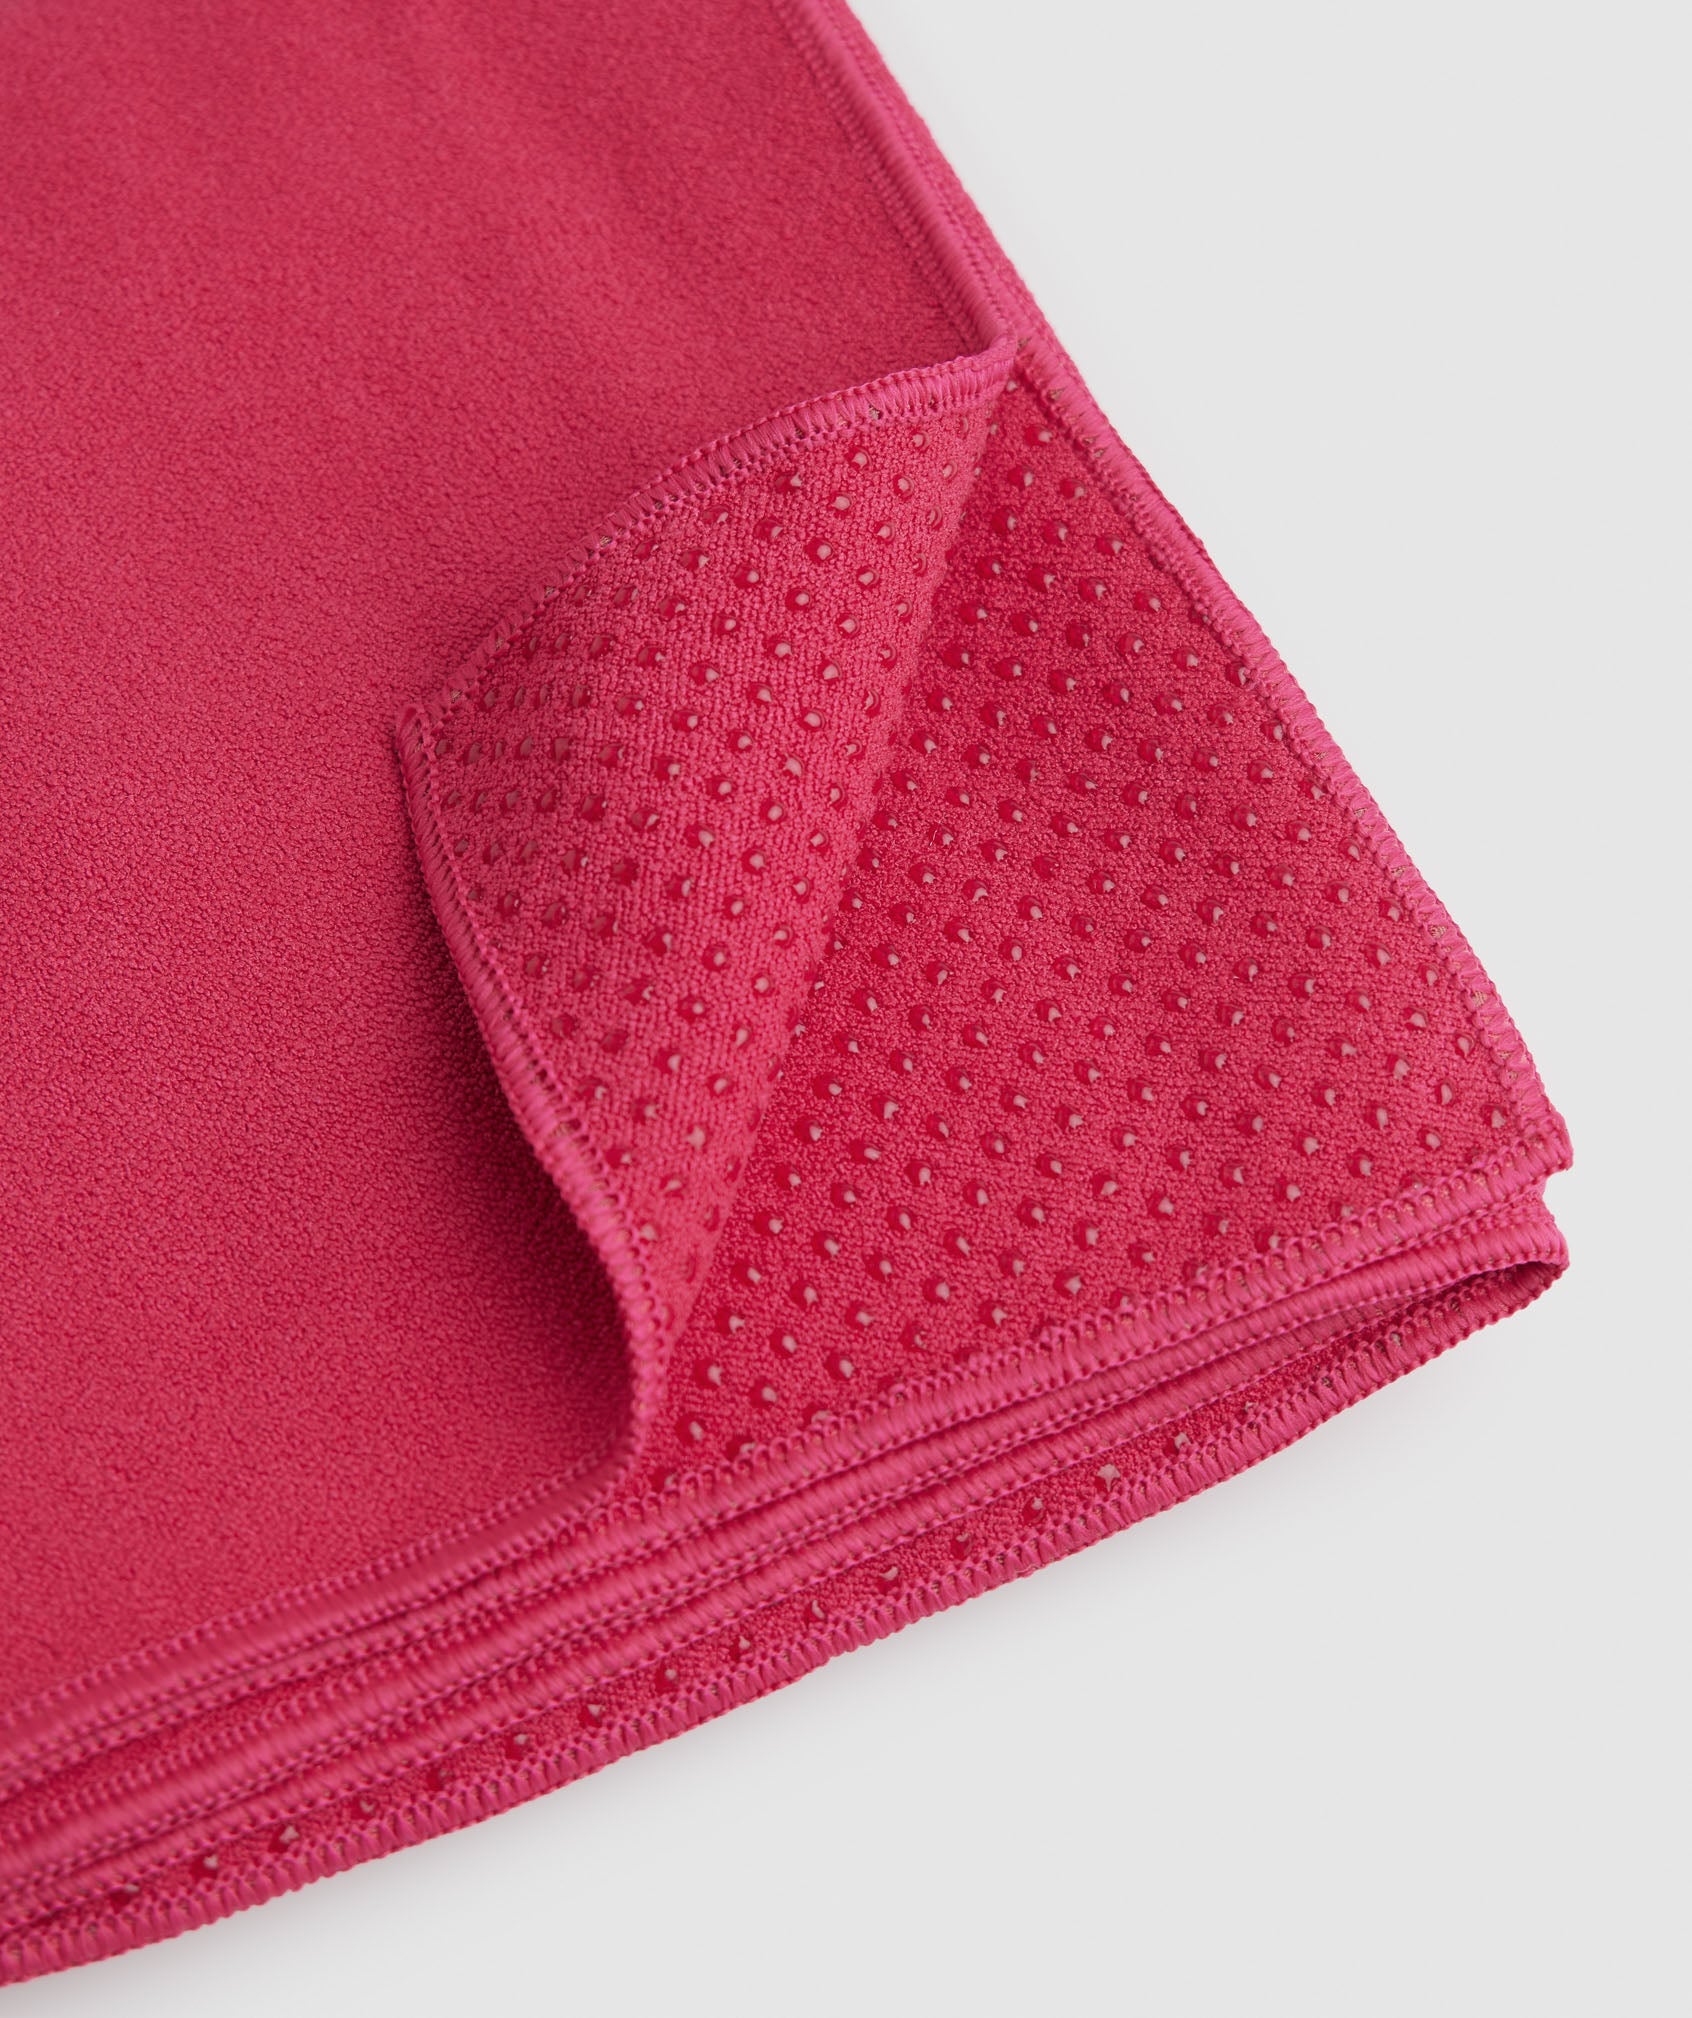 Studio Mat Towel in Hibiscus Pink